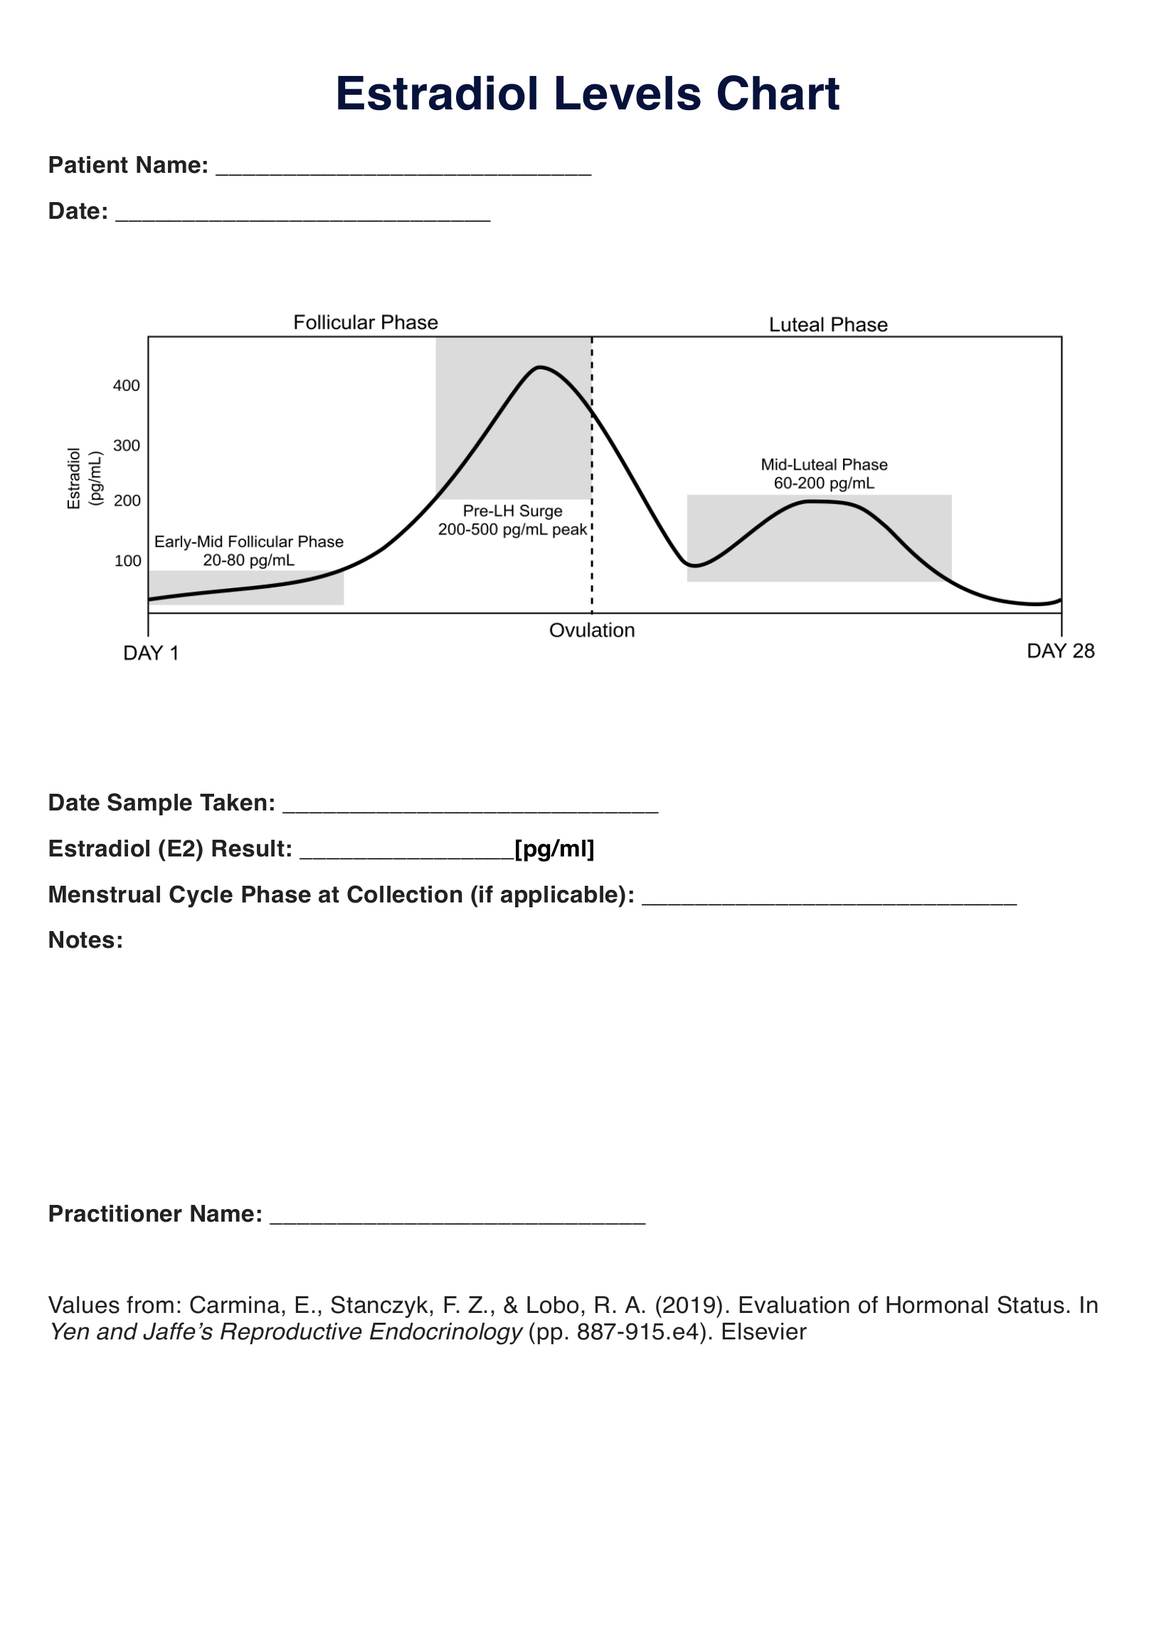 Estradiol Levels PDF Example